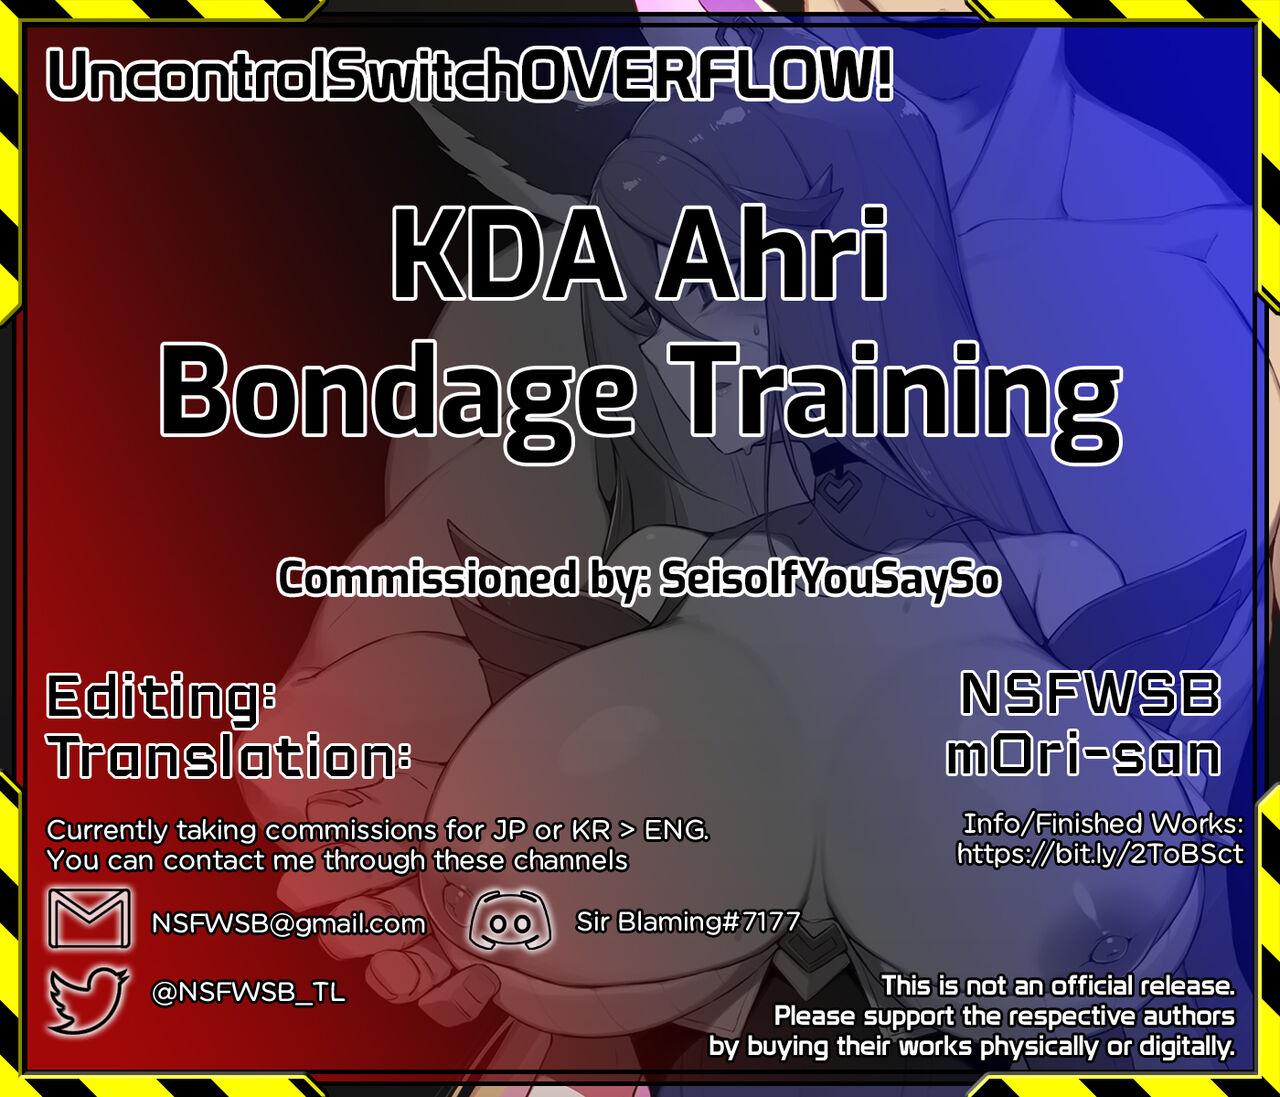 KDA Ahri Bondage Training 5